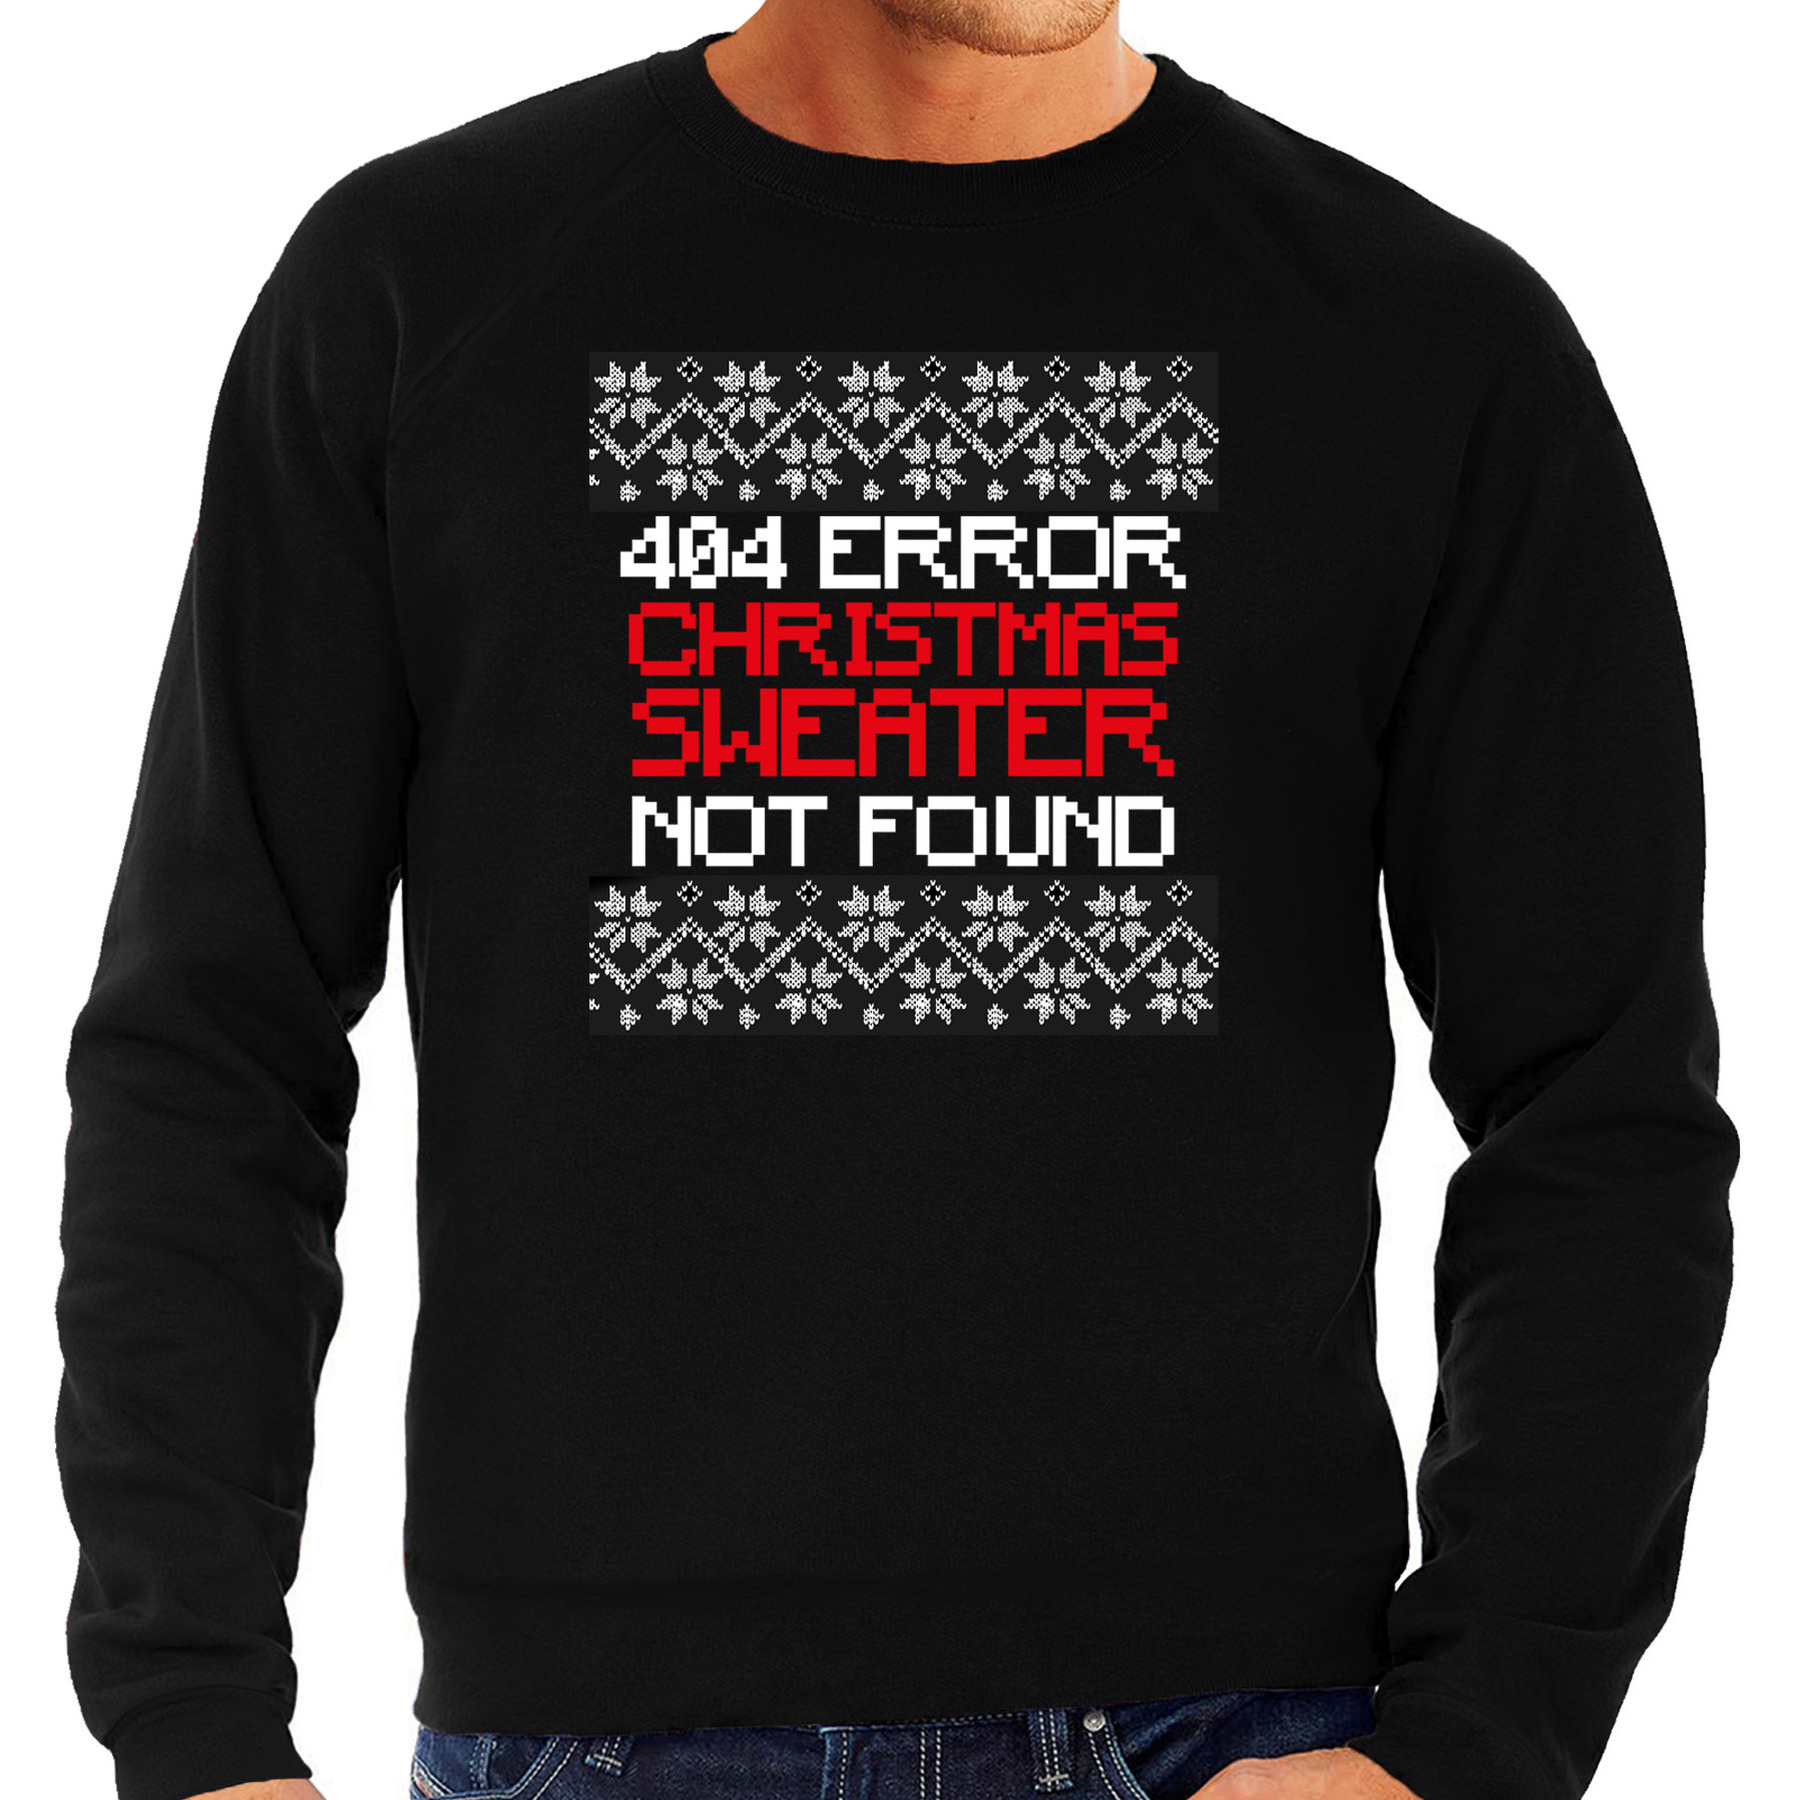 Foute Kersttrui 404 error fun Kerst sweater zwart voor heren